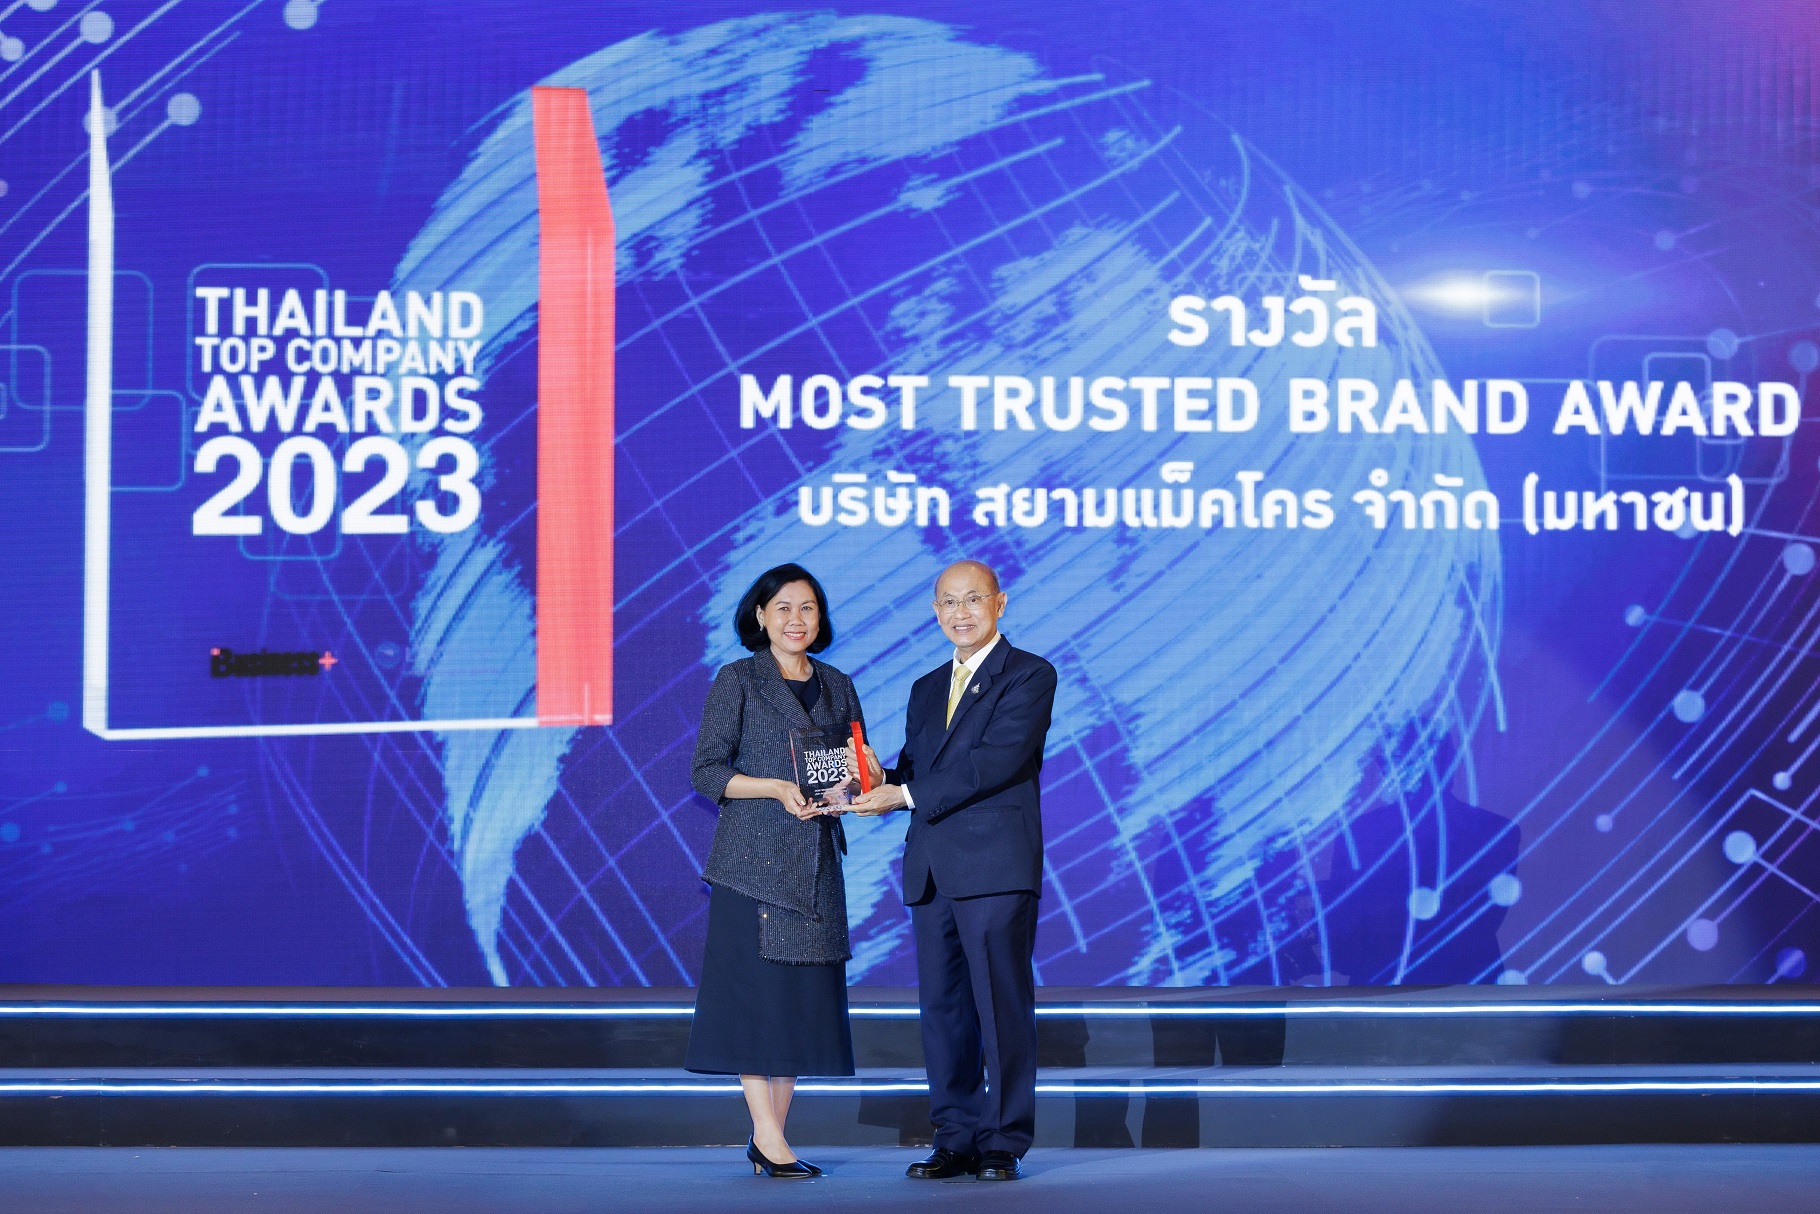 แม็คโคร คว้ารางวัลระดับประเทศ Thailand Top Company Awards 2023 ประเภท “Most Trusted Brand” ตอกย้ำความเชื่อมั่น ครองใจลูกค้าทุกกลุ่ม